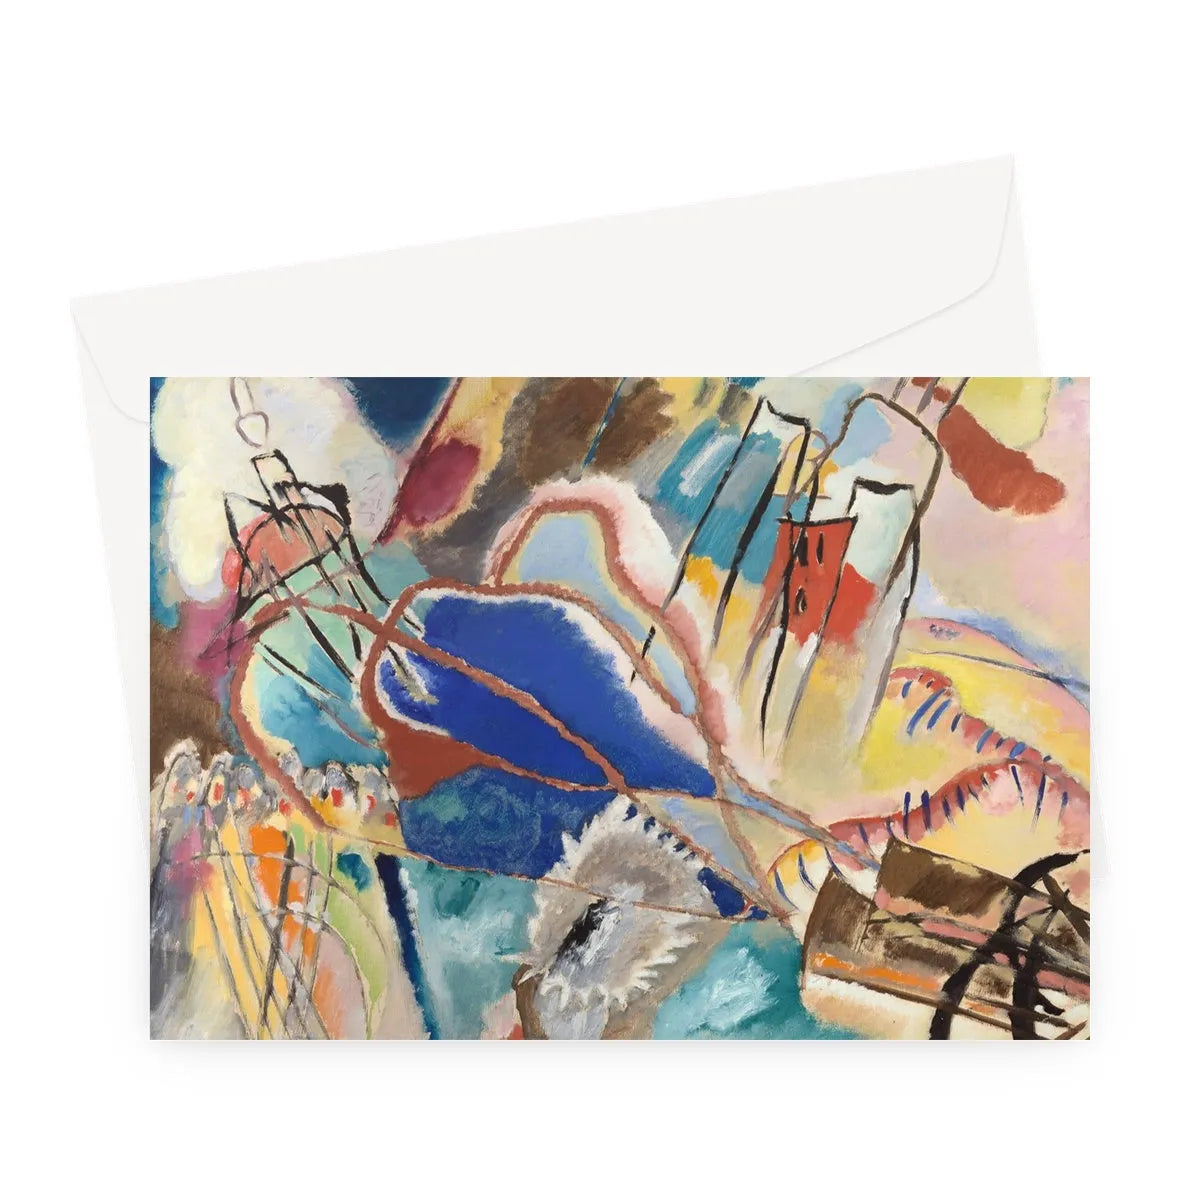 Improvisation No. 30 (cannons) By Vasily Kandinsky Greeting Card - A5 Landscape / 1 Card - Notebooks & Notepads